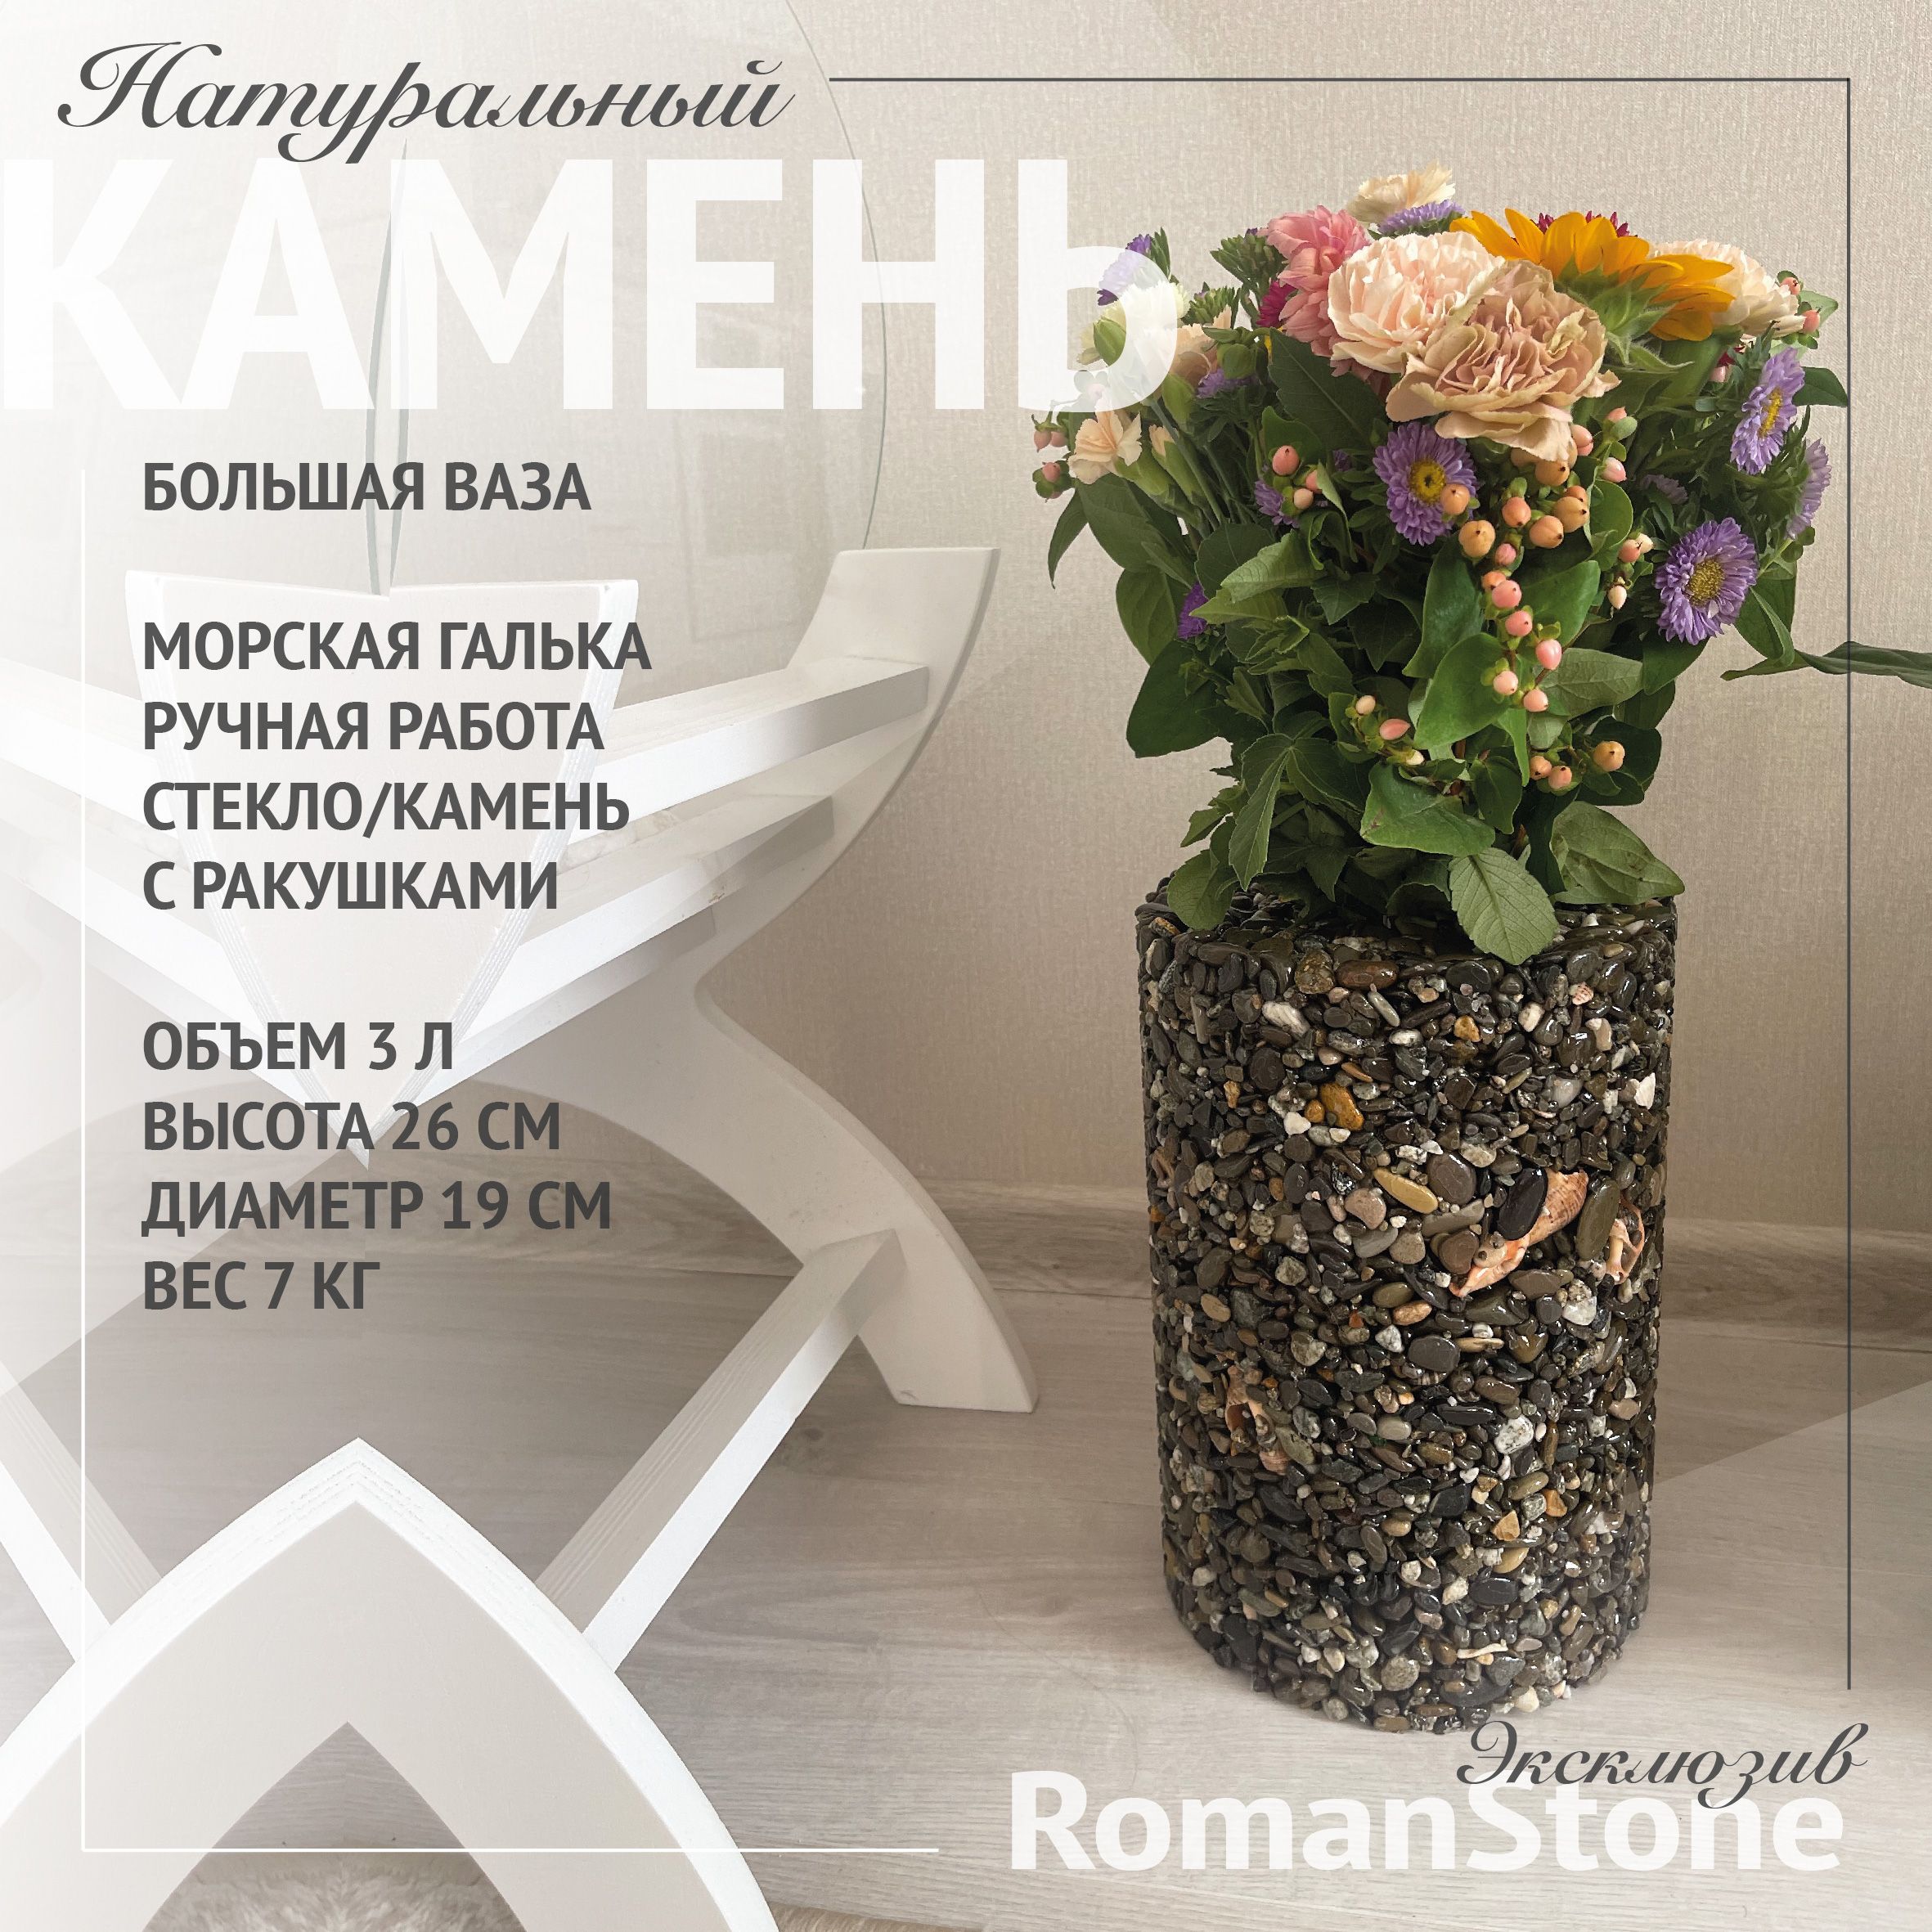 Бутылки декоративные ручной работы: для флористики и декора интерьера, купить оптом в Киеве